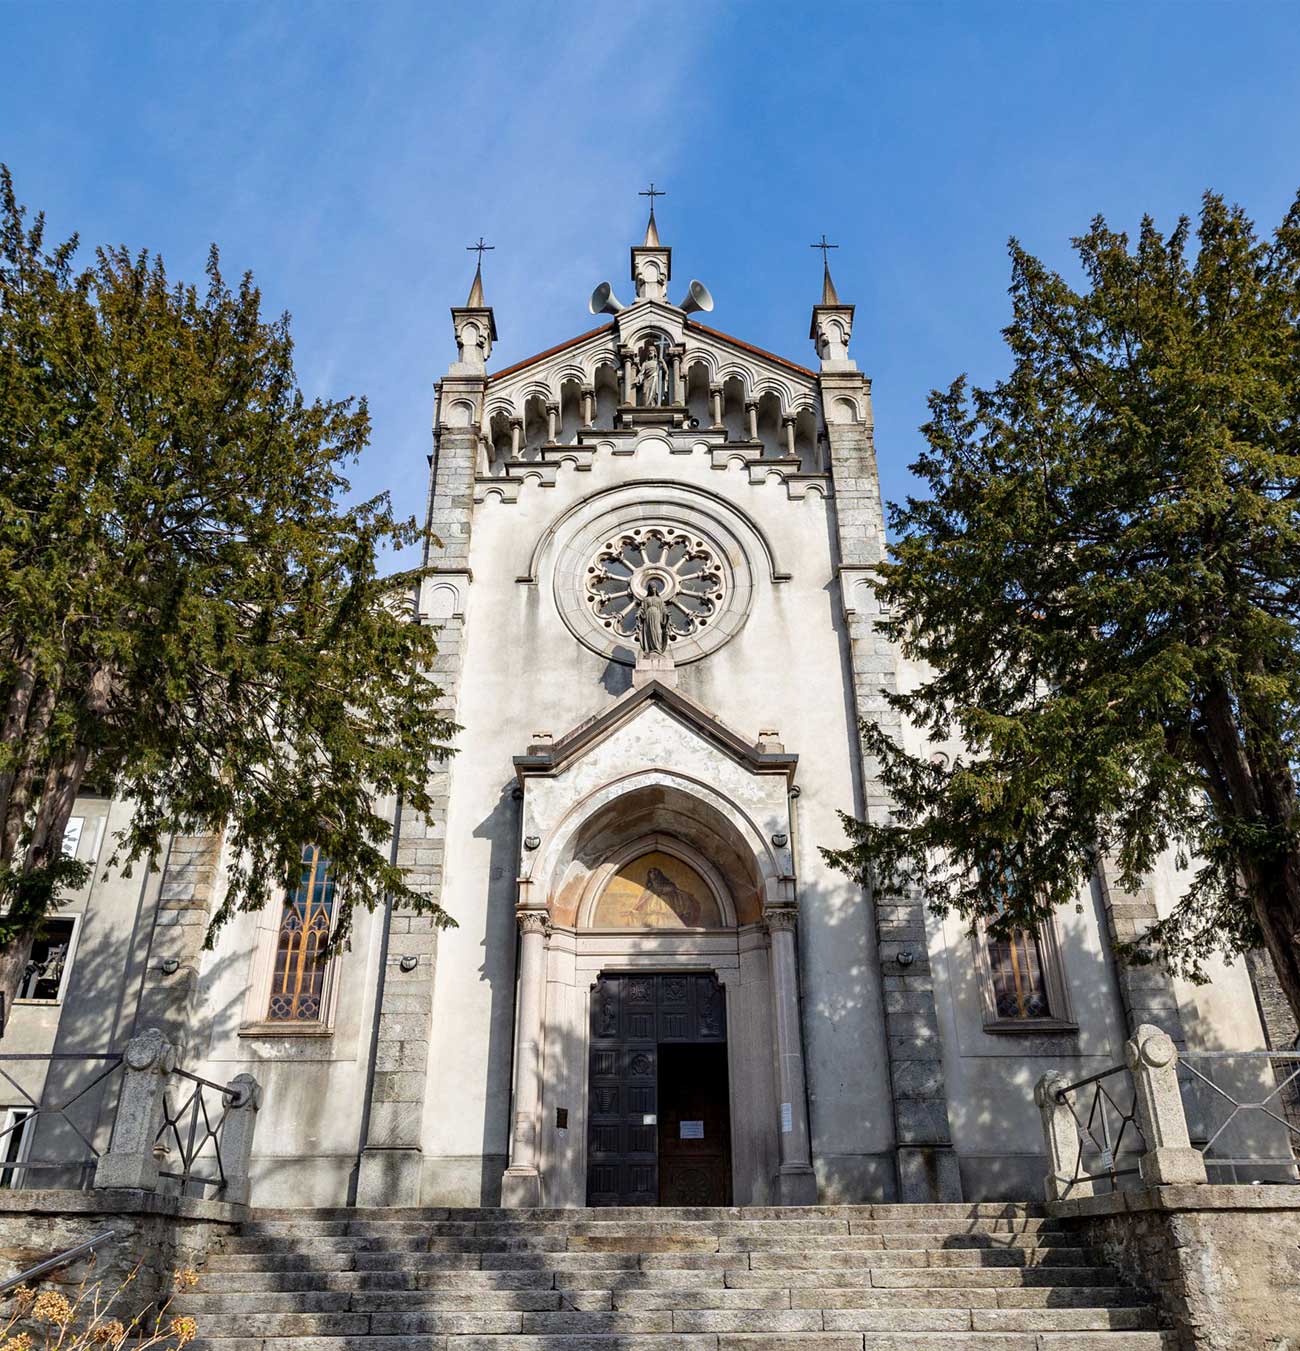 Parrocchiale del Sacro Cuore di Gesù a Vogogna - Wedding Visit Piemonte